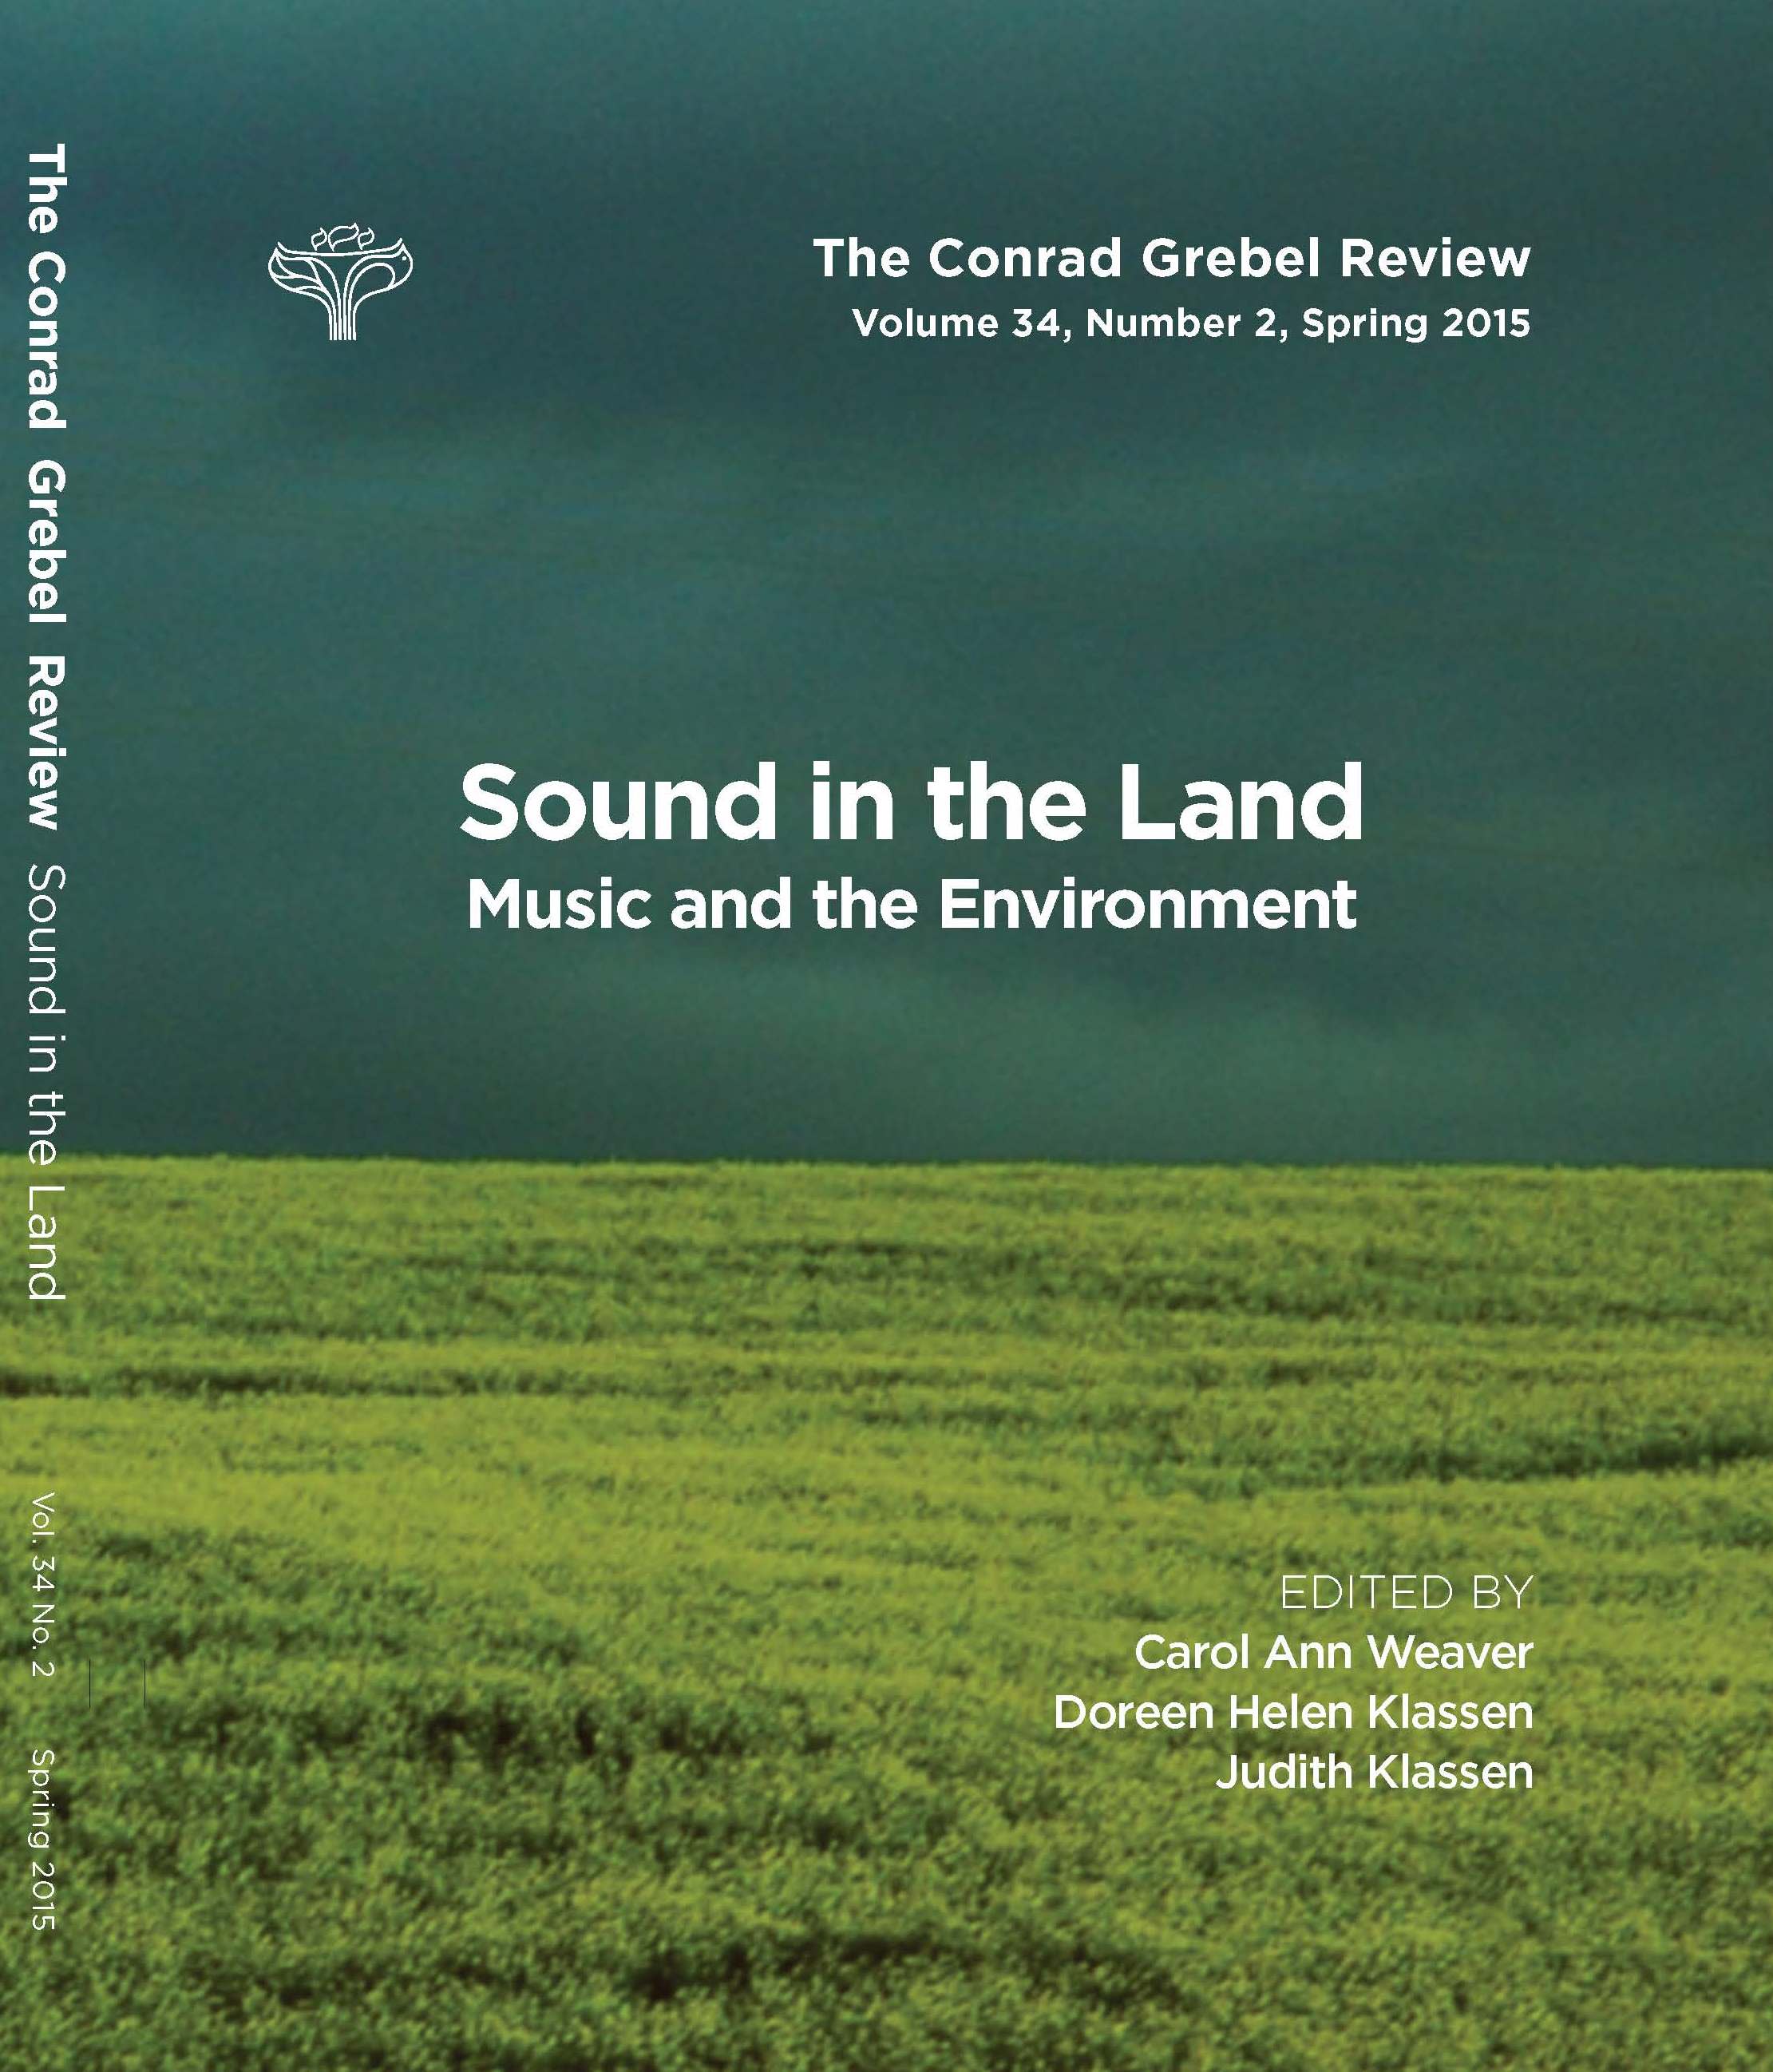 The Conrad Grebel Review cover